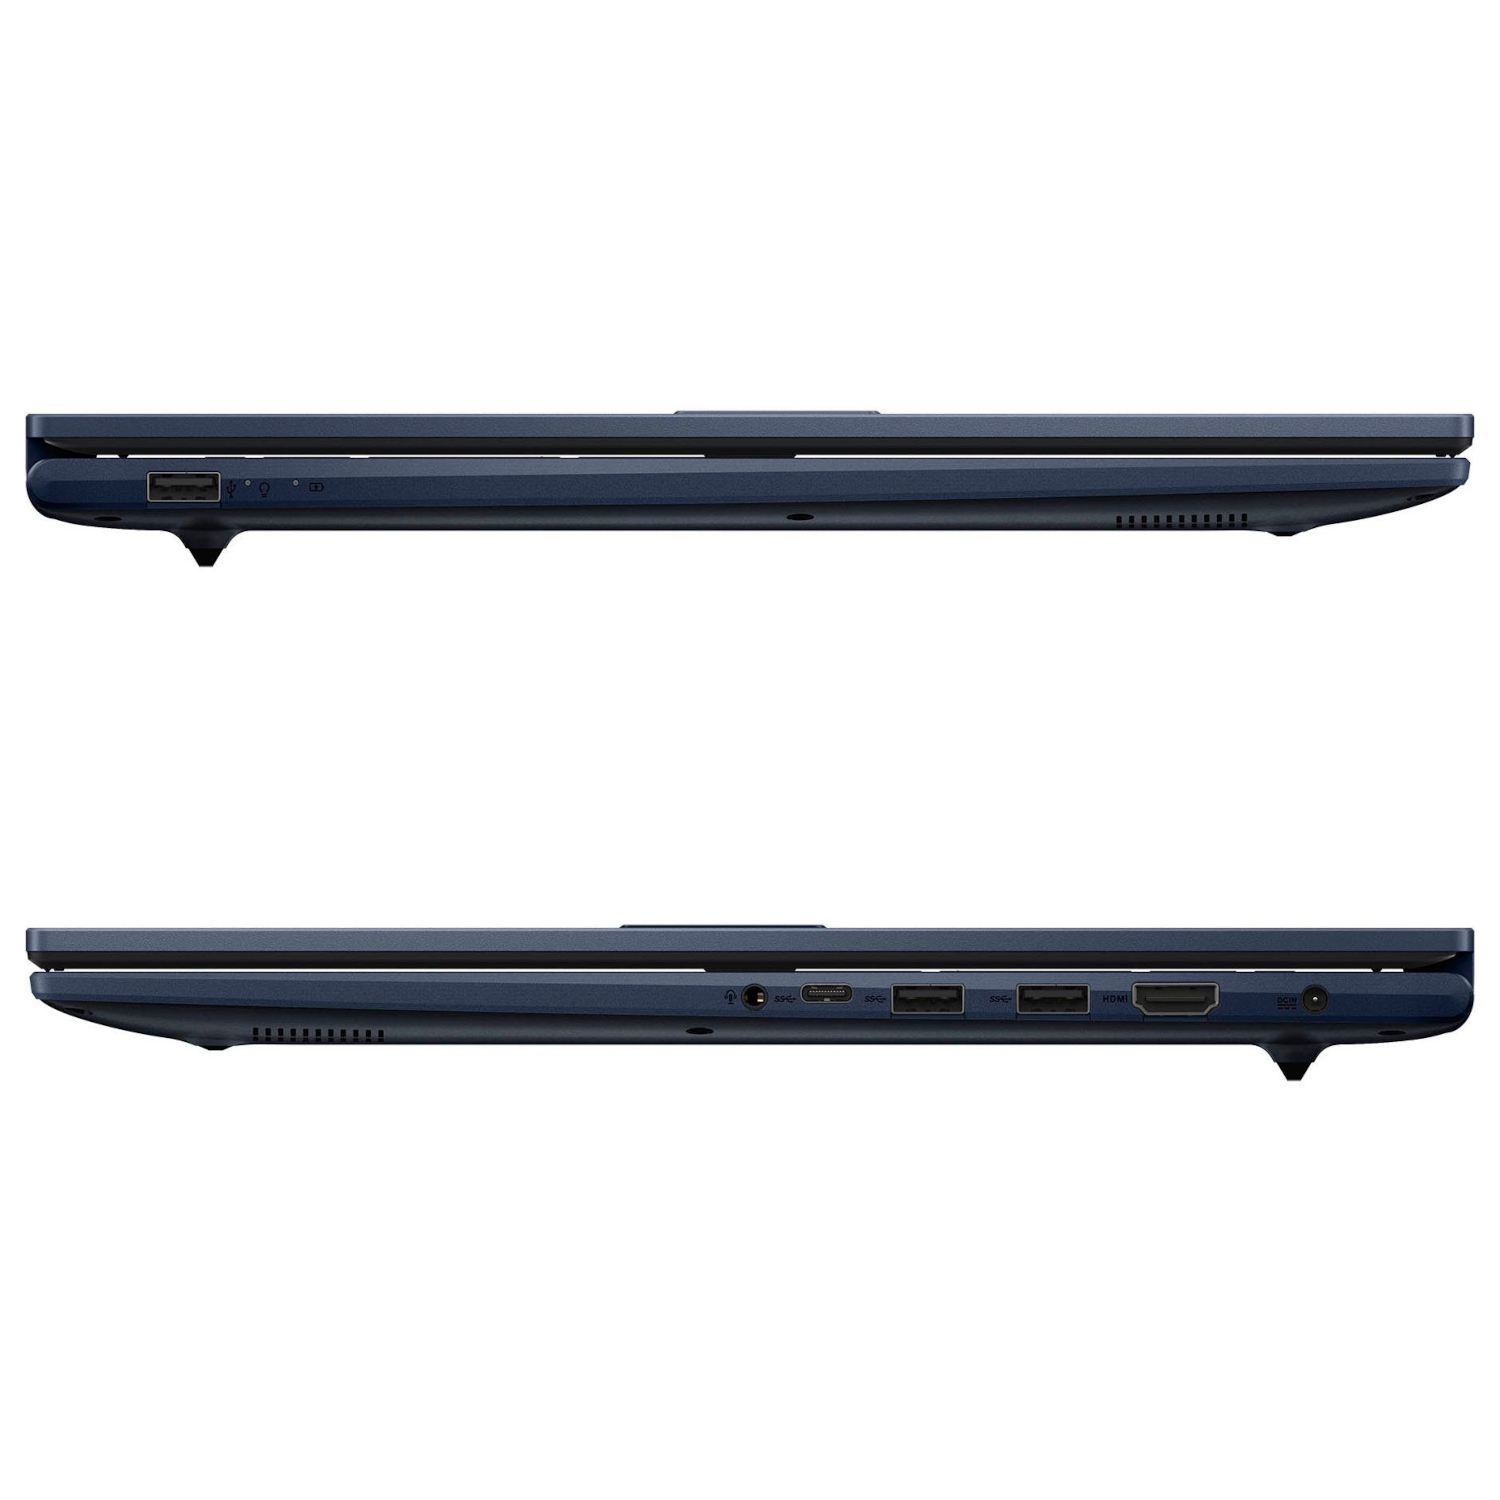 ASUS Vivobook X-Serie, fertig eingerichtet, GB Office Zoll 500 17,3 2021 mit Display, RAM, Blue GB Pro, Quiet Intel®, 16 SSD, Notebook